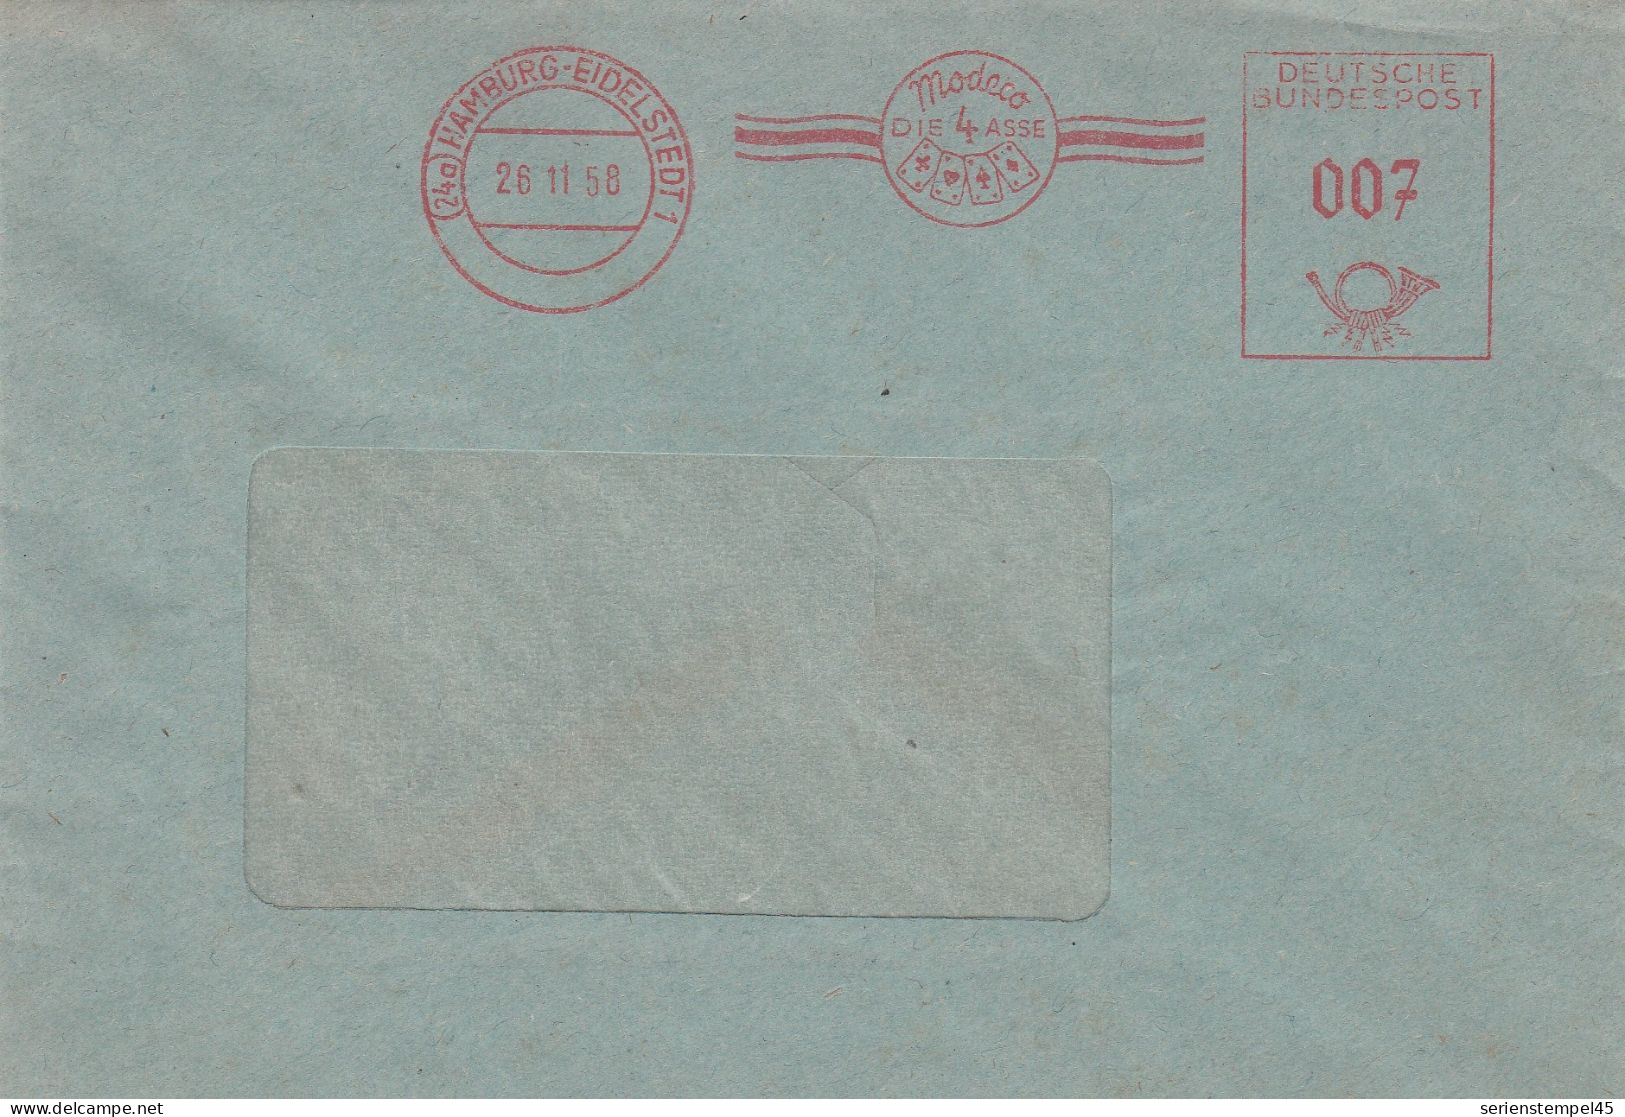 Bund Brief Mit Freistempel Rot Mit Motiv Kartenspiel Hamburg Eidelstedt 1958 Modeco Die 4 Asse - Unclassified